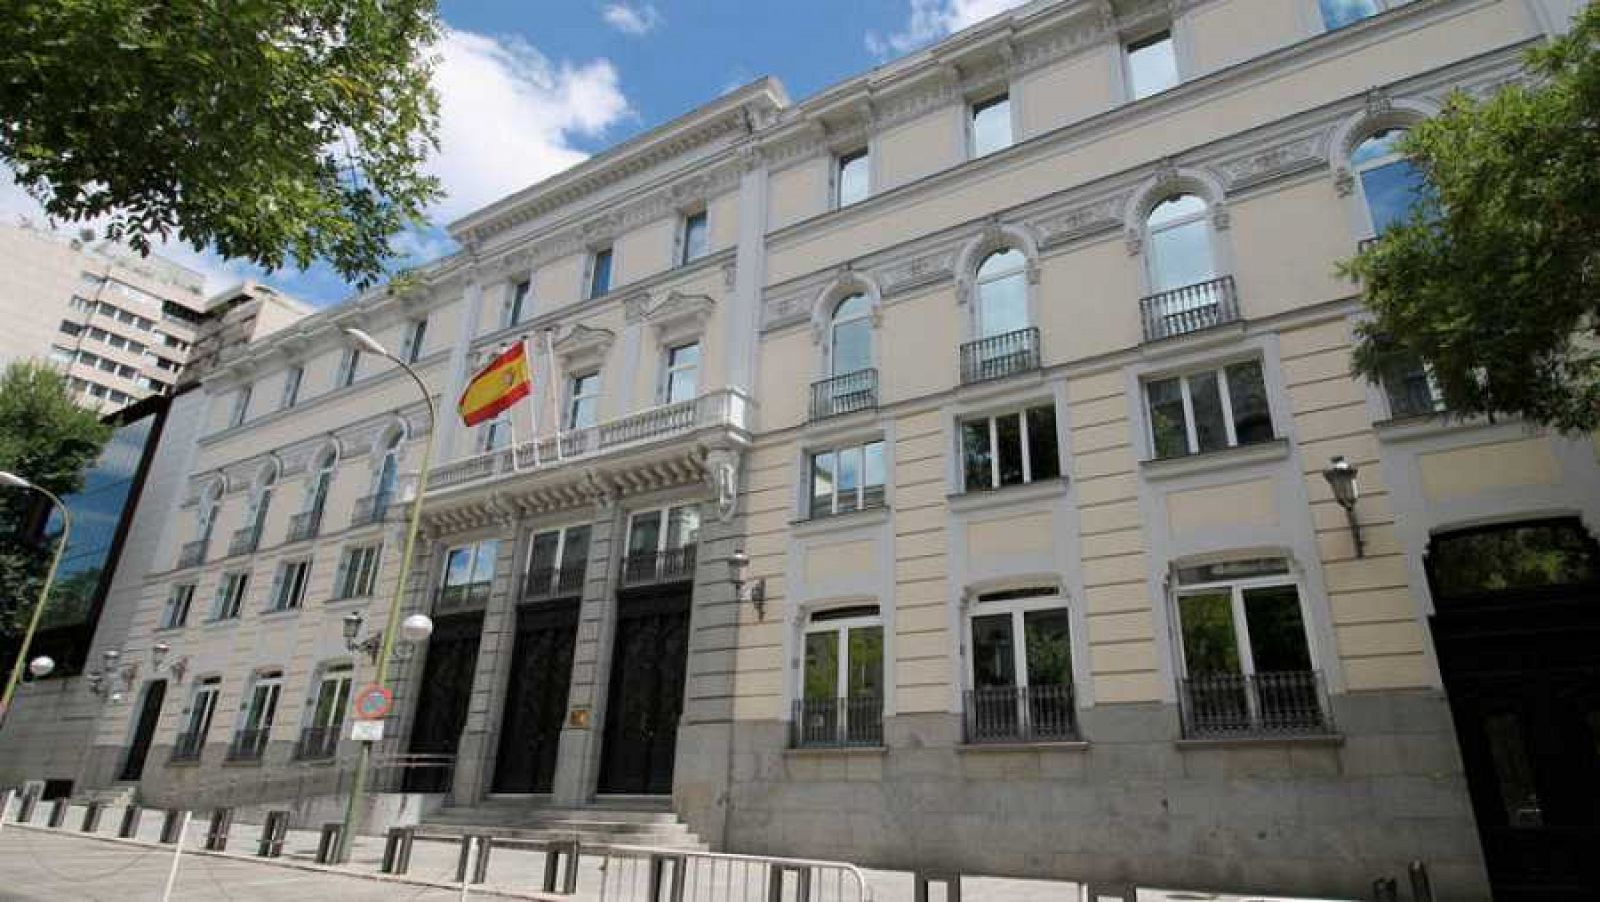 Renovación del CGPJ: Bruselas pide a los partidos que "pongan de su parte" - RTVE.es